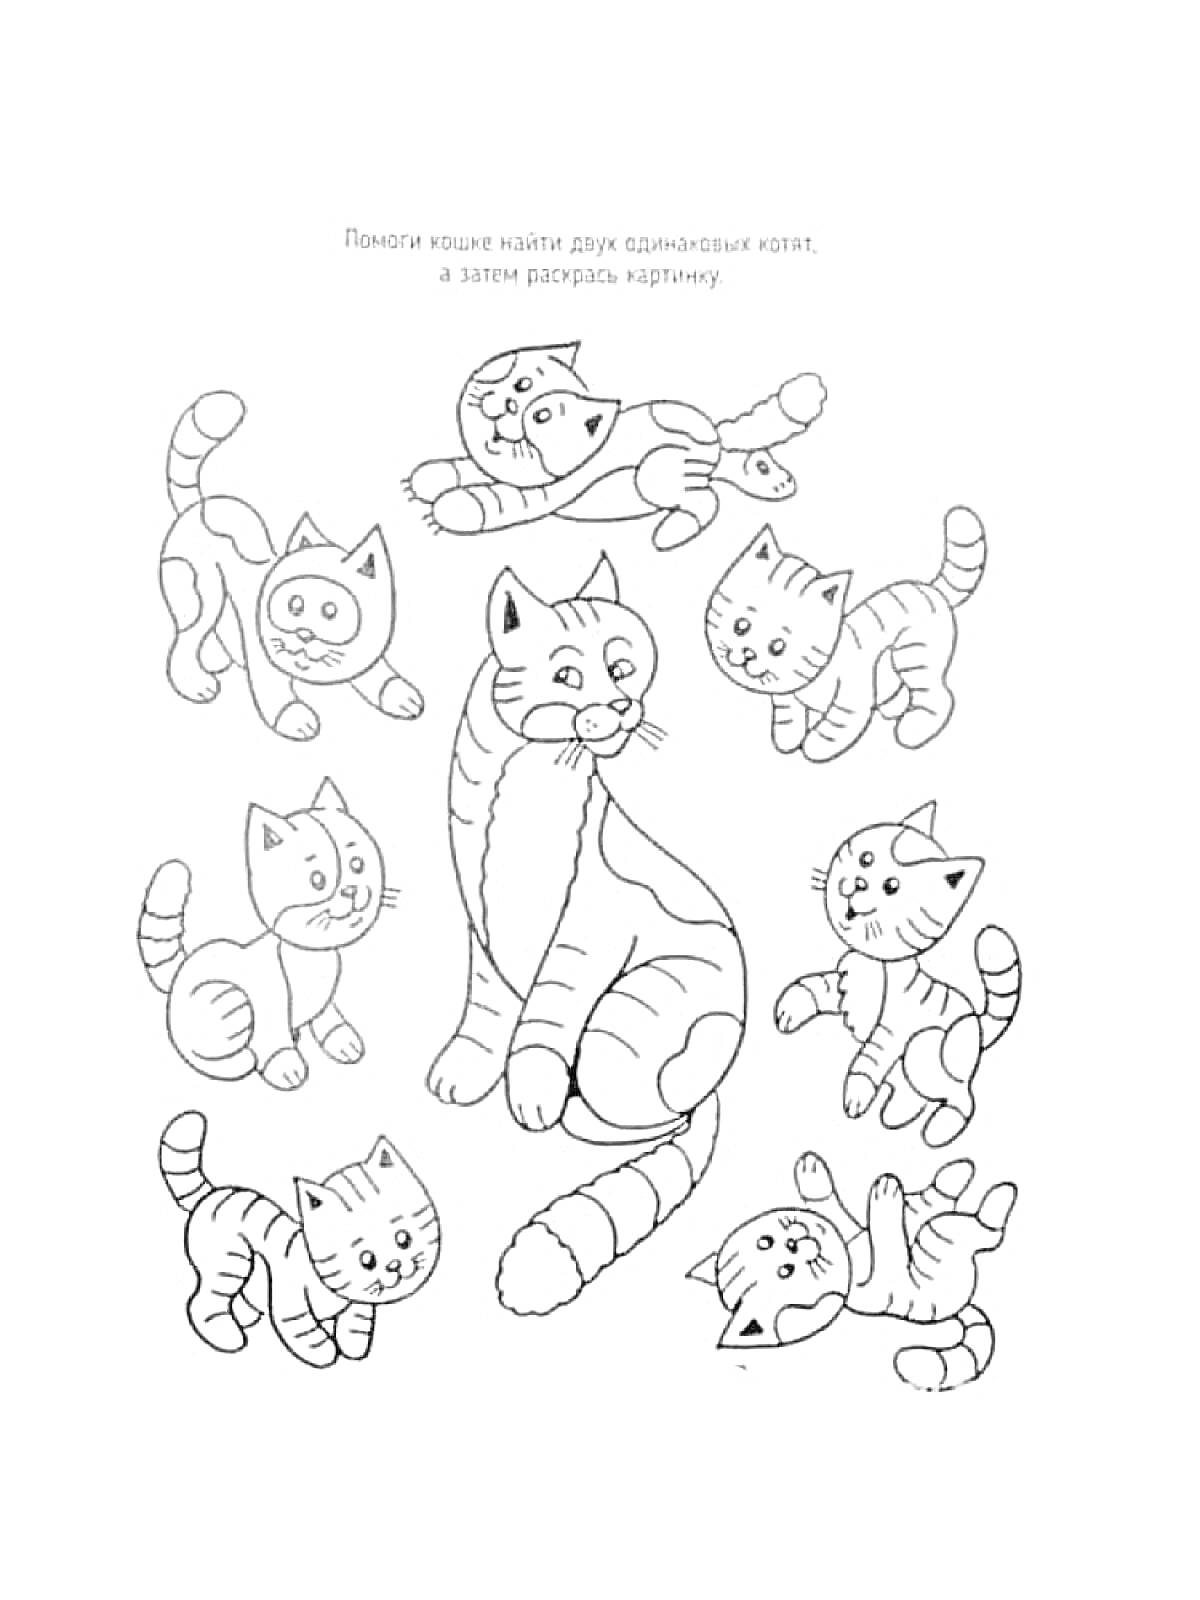 Раскраска Найди двух одинаковых котят среди группы котят и раскрась картинку